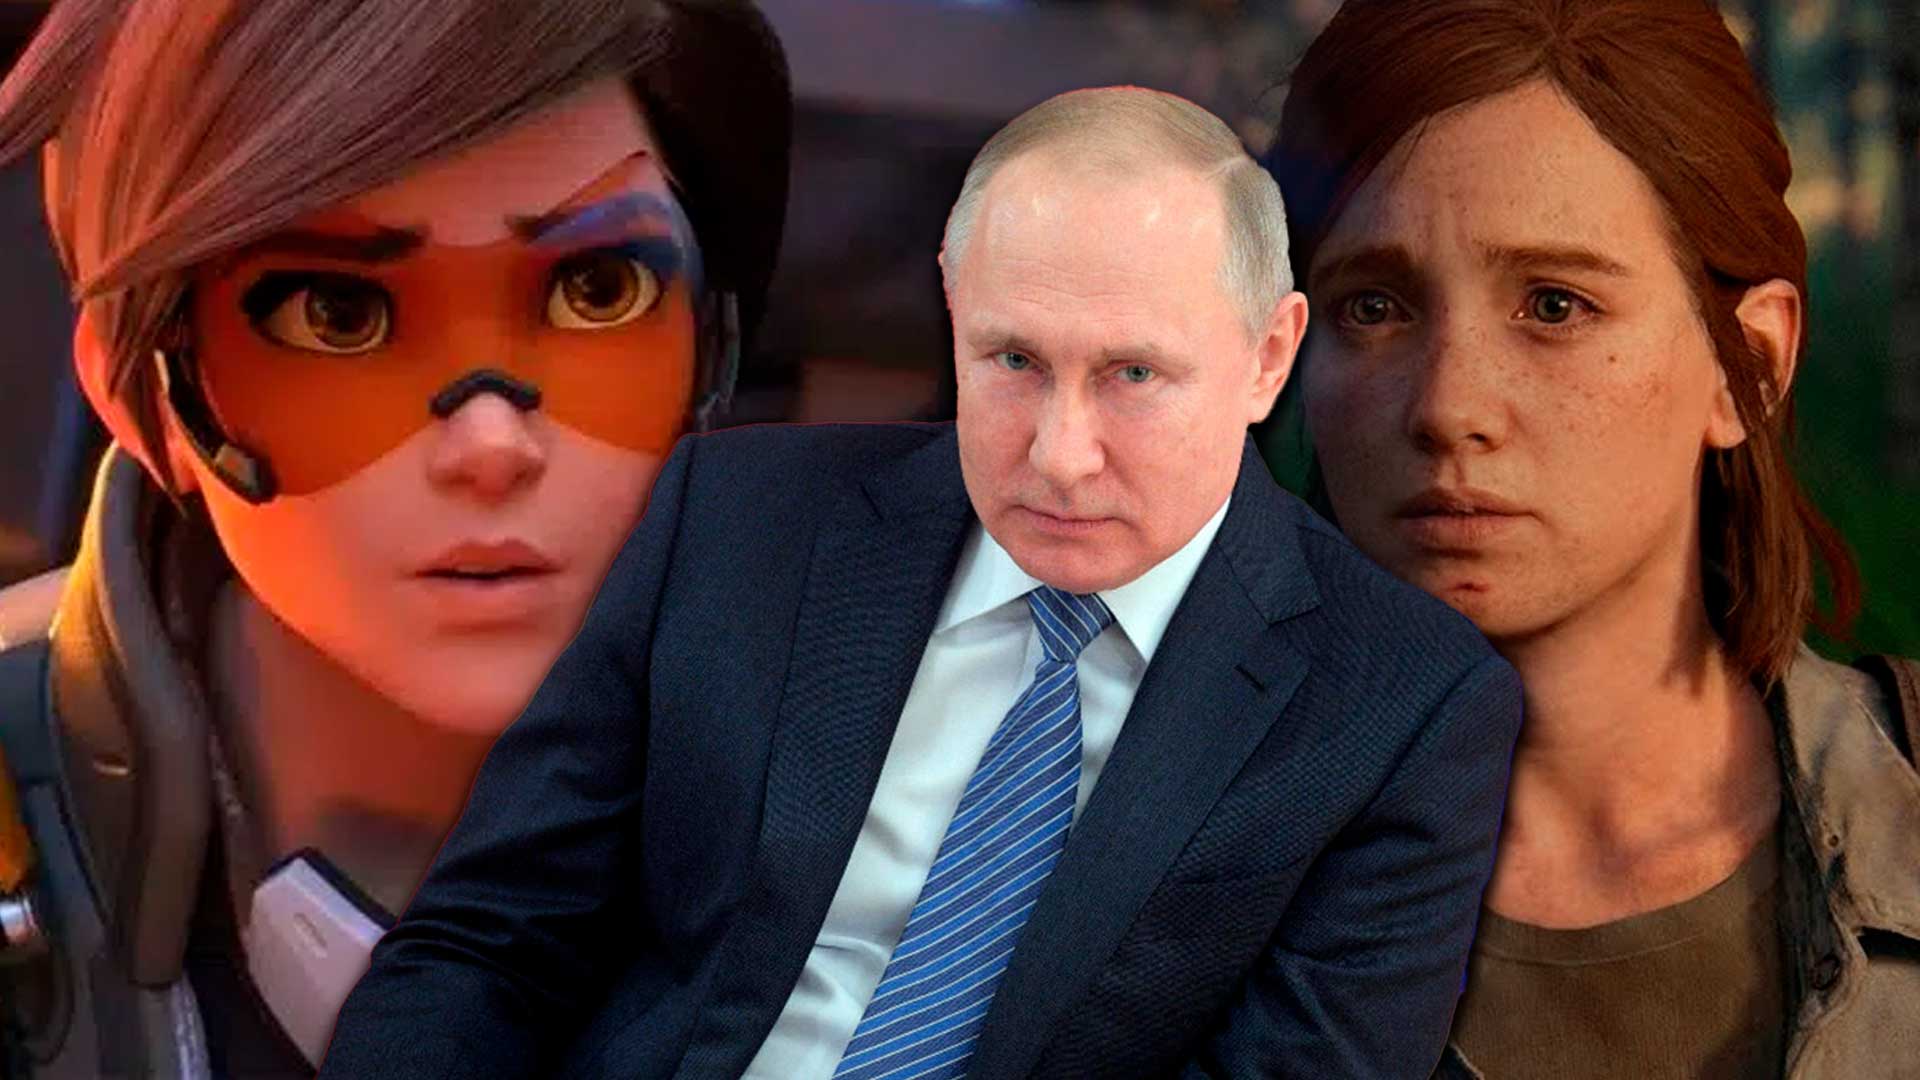 El último cómic de Overwatch levanta polémicas, censurado en Rusia